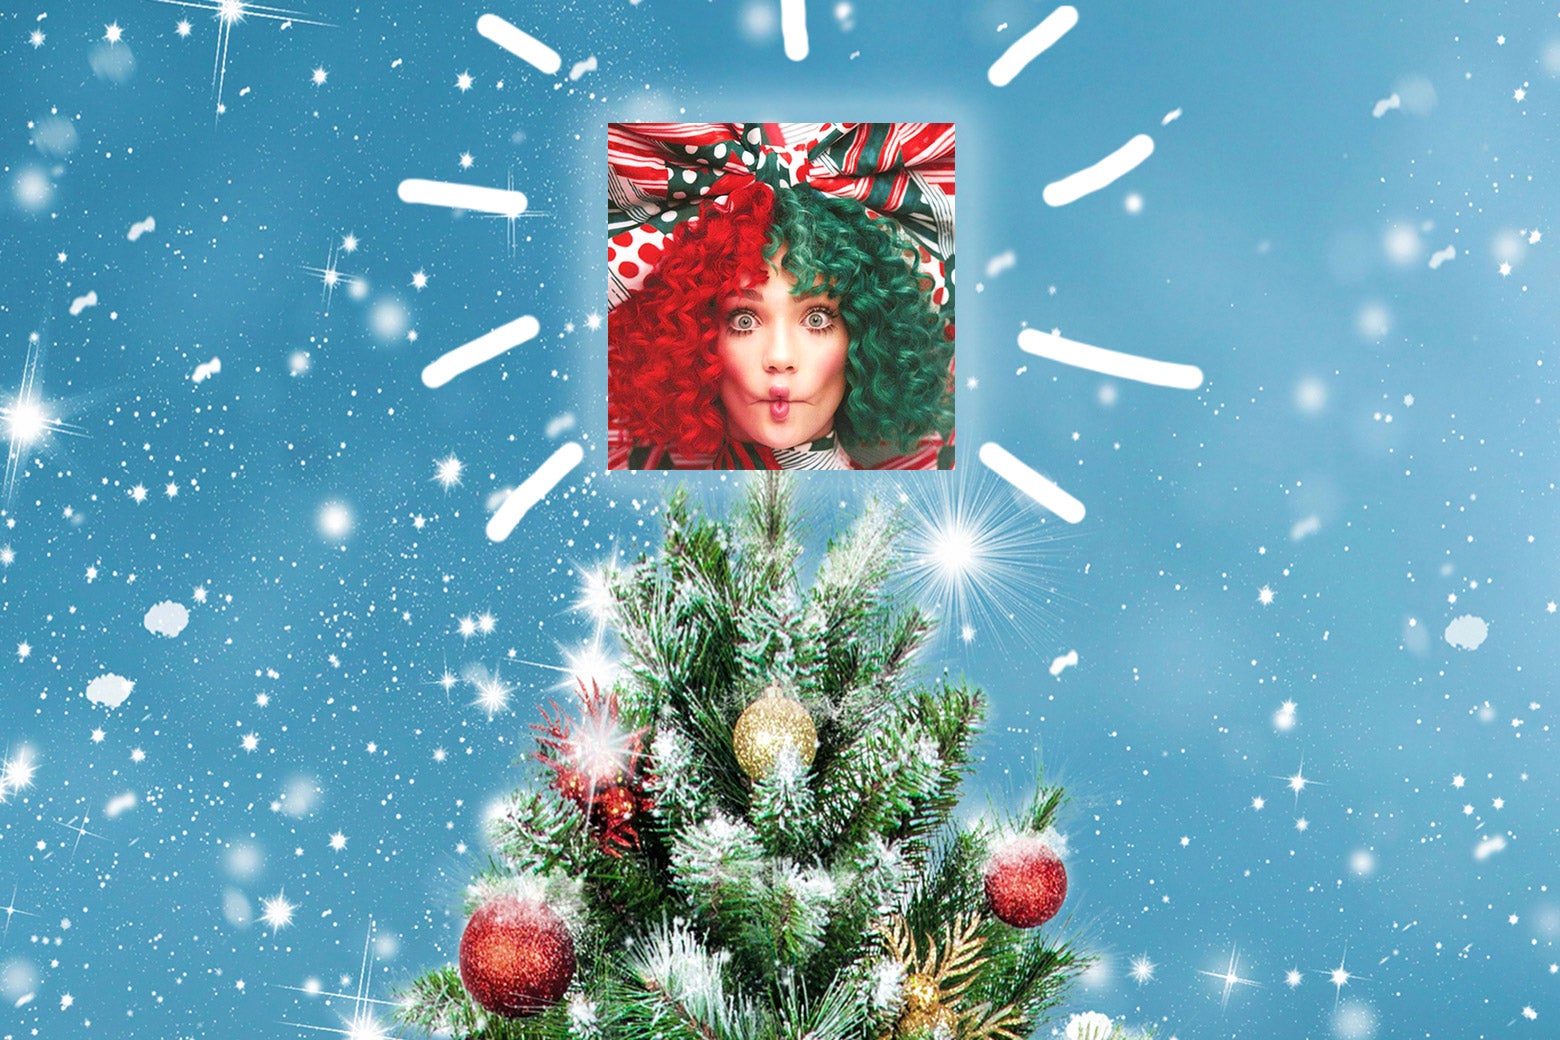 A Christmas tree w/ Sia’s Christmas album on top.